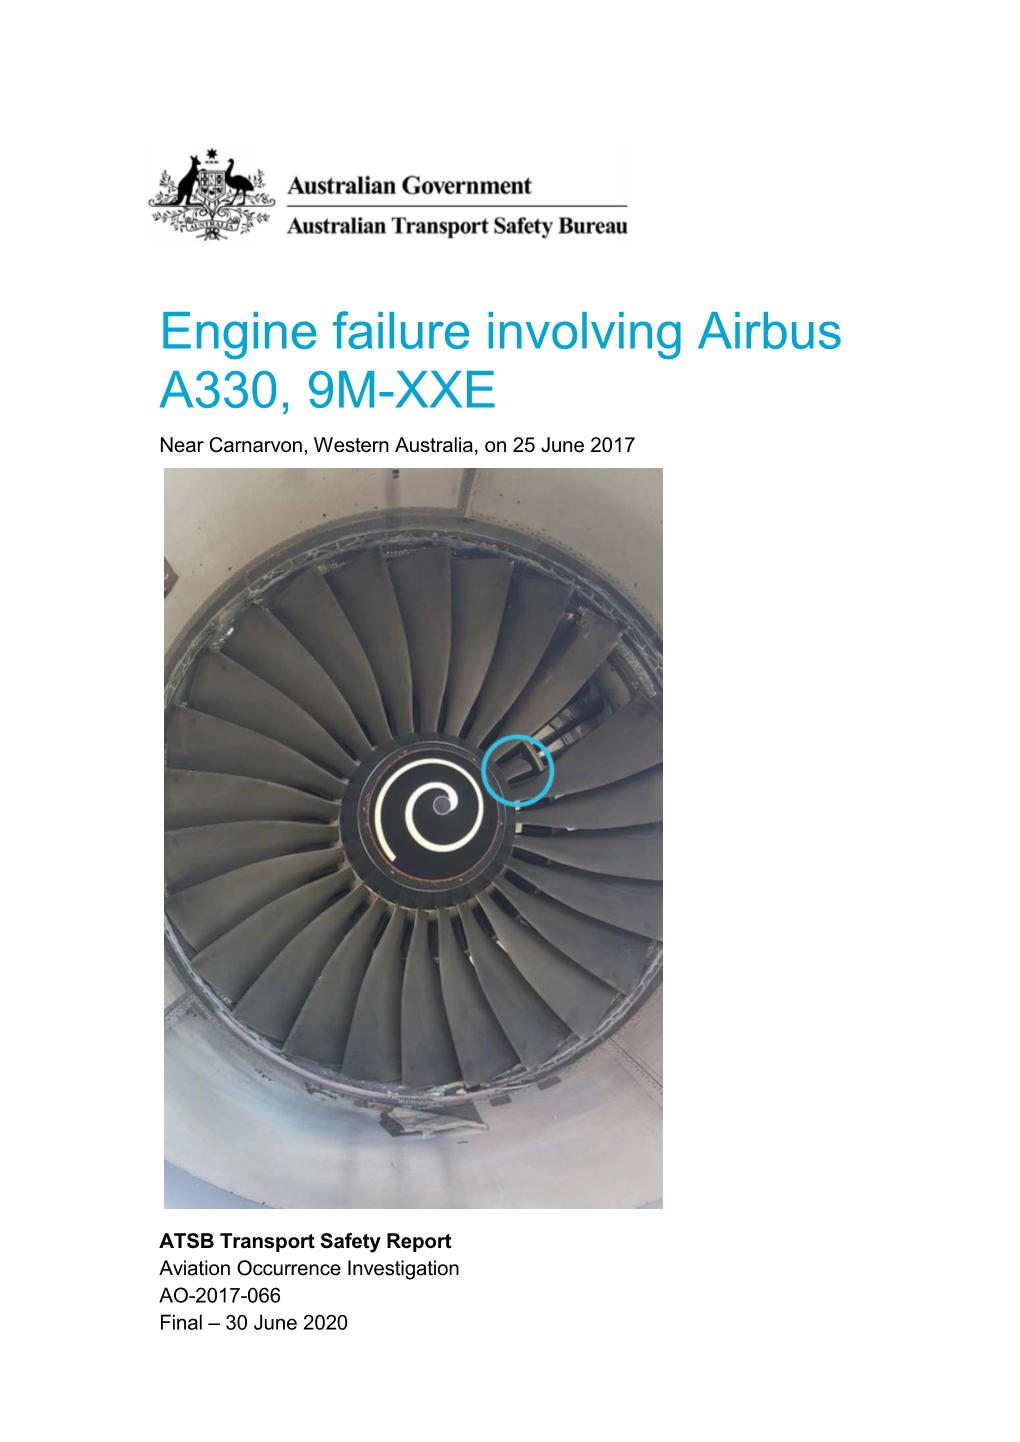 Engine Failure Involving Airbus A330, 9M-XXE, Near Carnarvon, Western